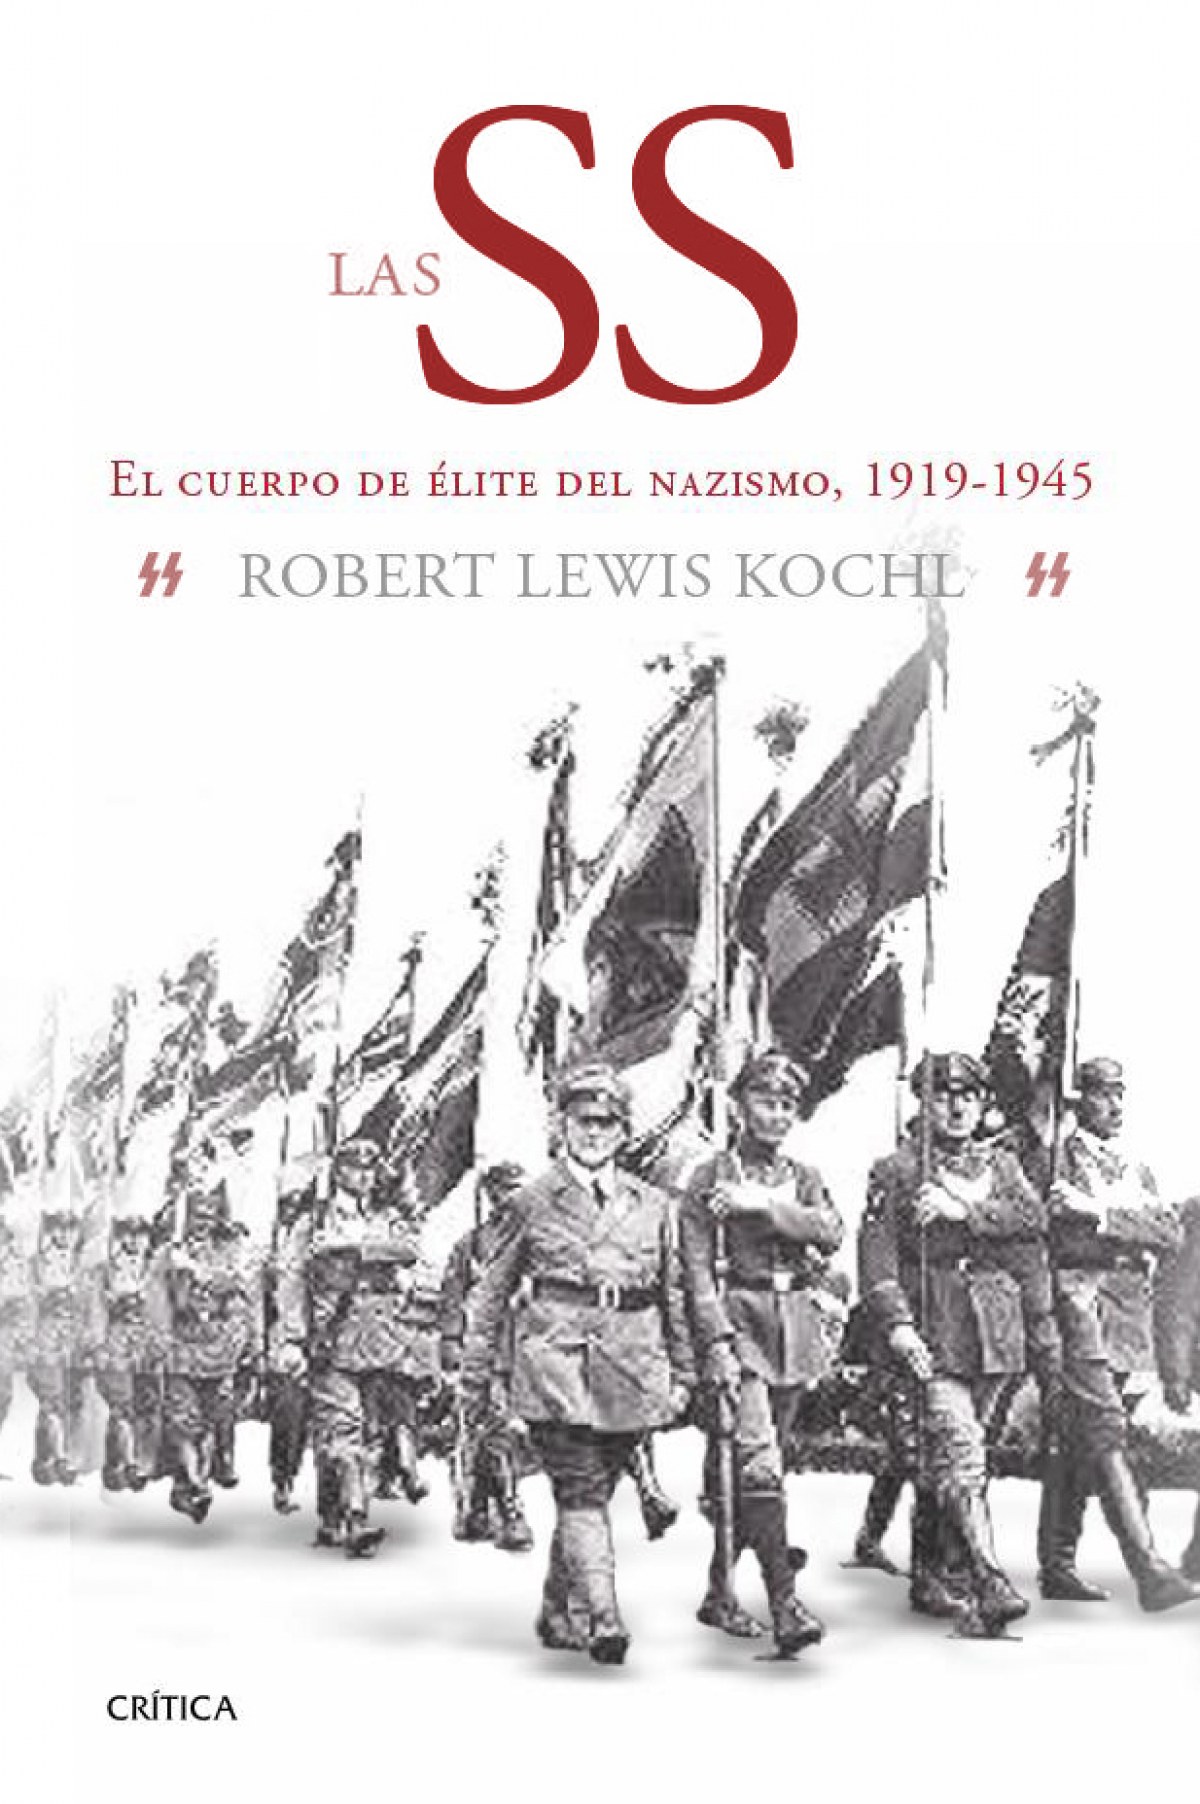 El cuerpo de elite del nazismo, 1919-1945 - Lewis Oehl, Robert